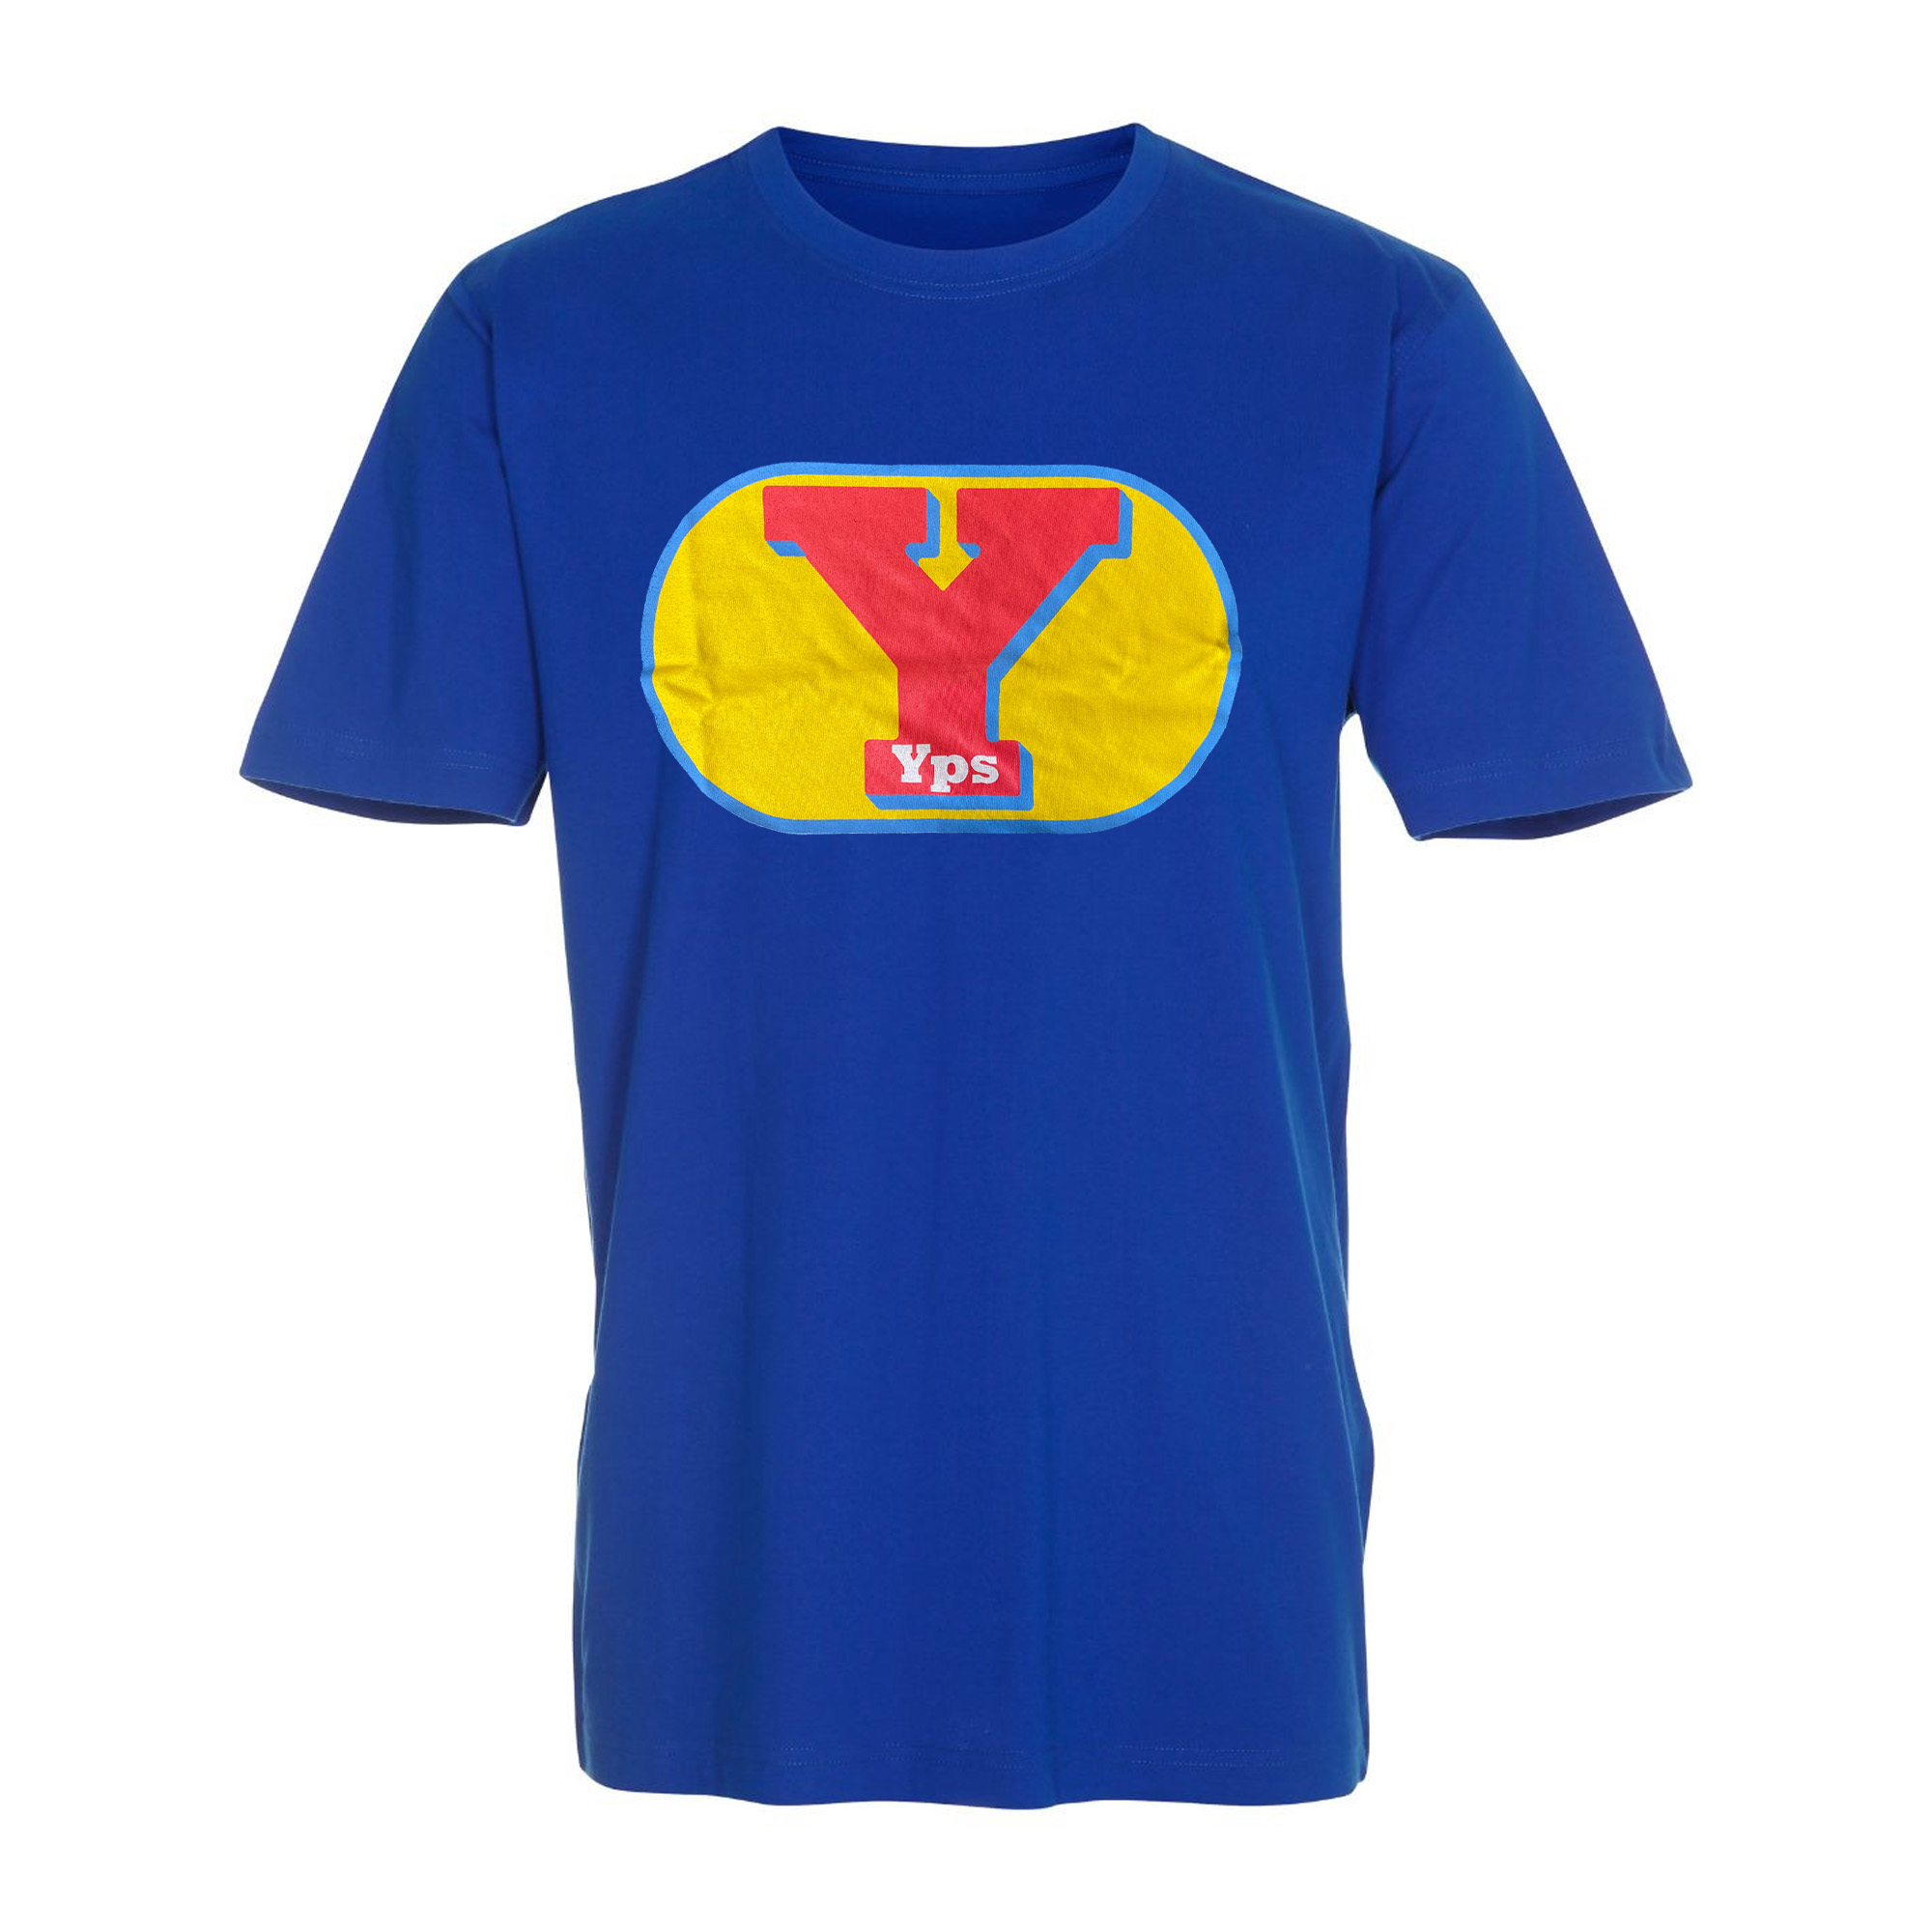 Yps Logo T-Shirt blau (Größe L)